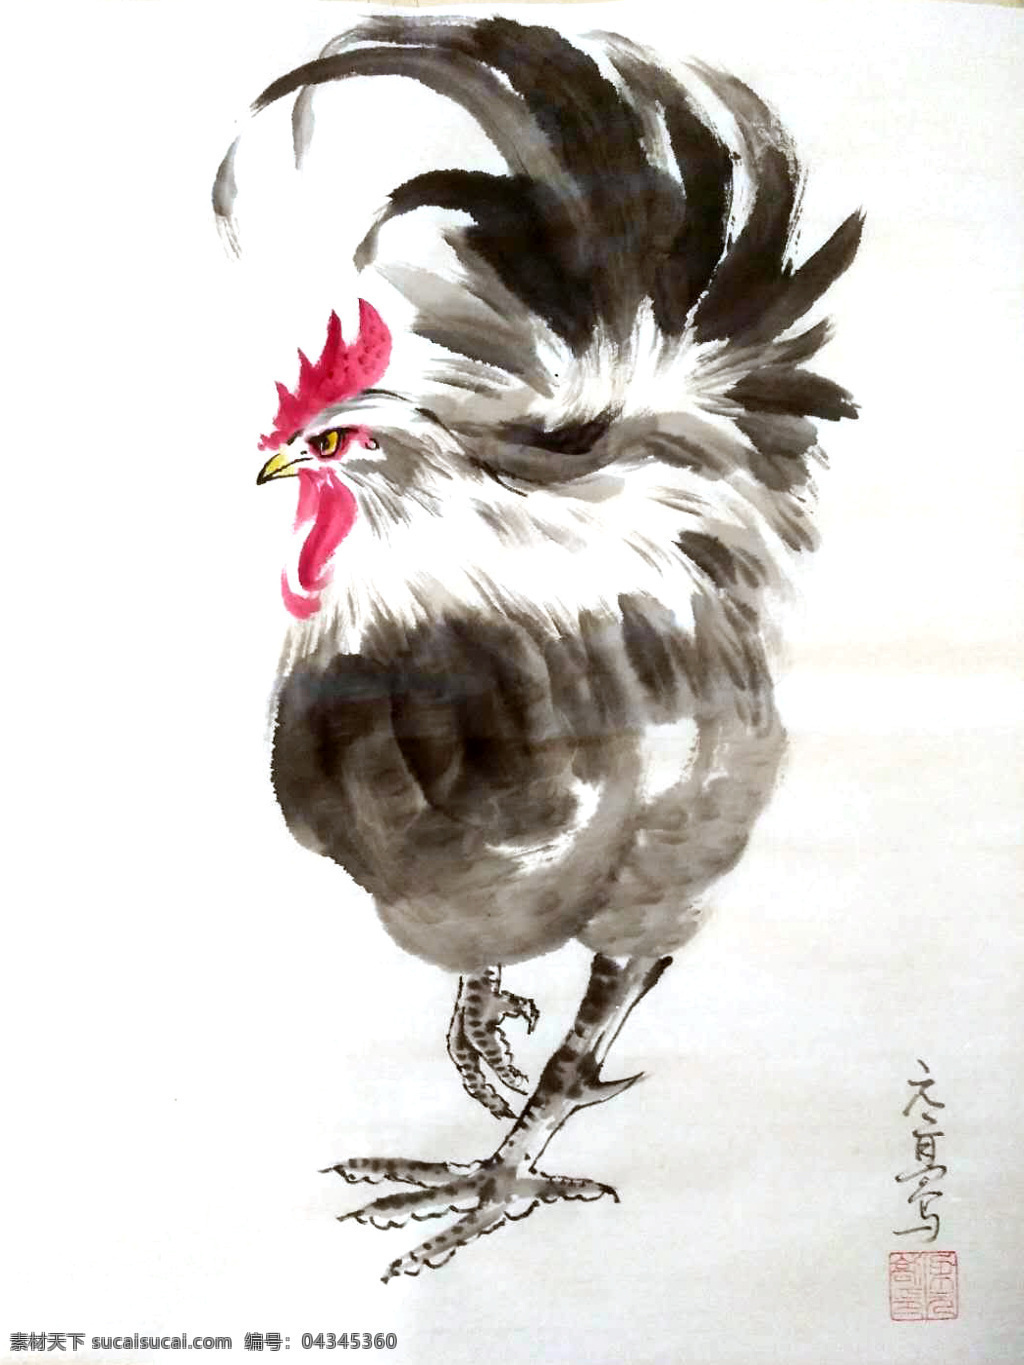 国画公鸡 国画 水墨画 公鸡 鸡 走路 文化艺术 绘画书法